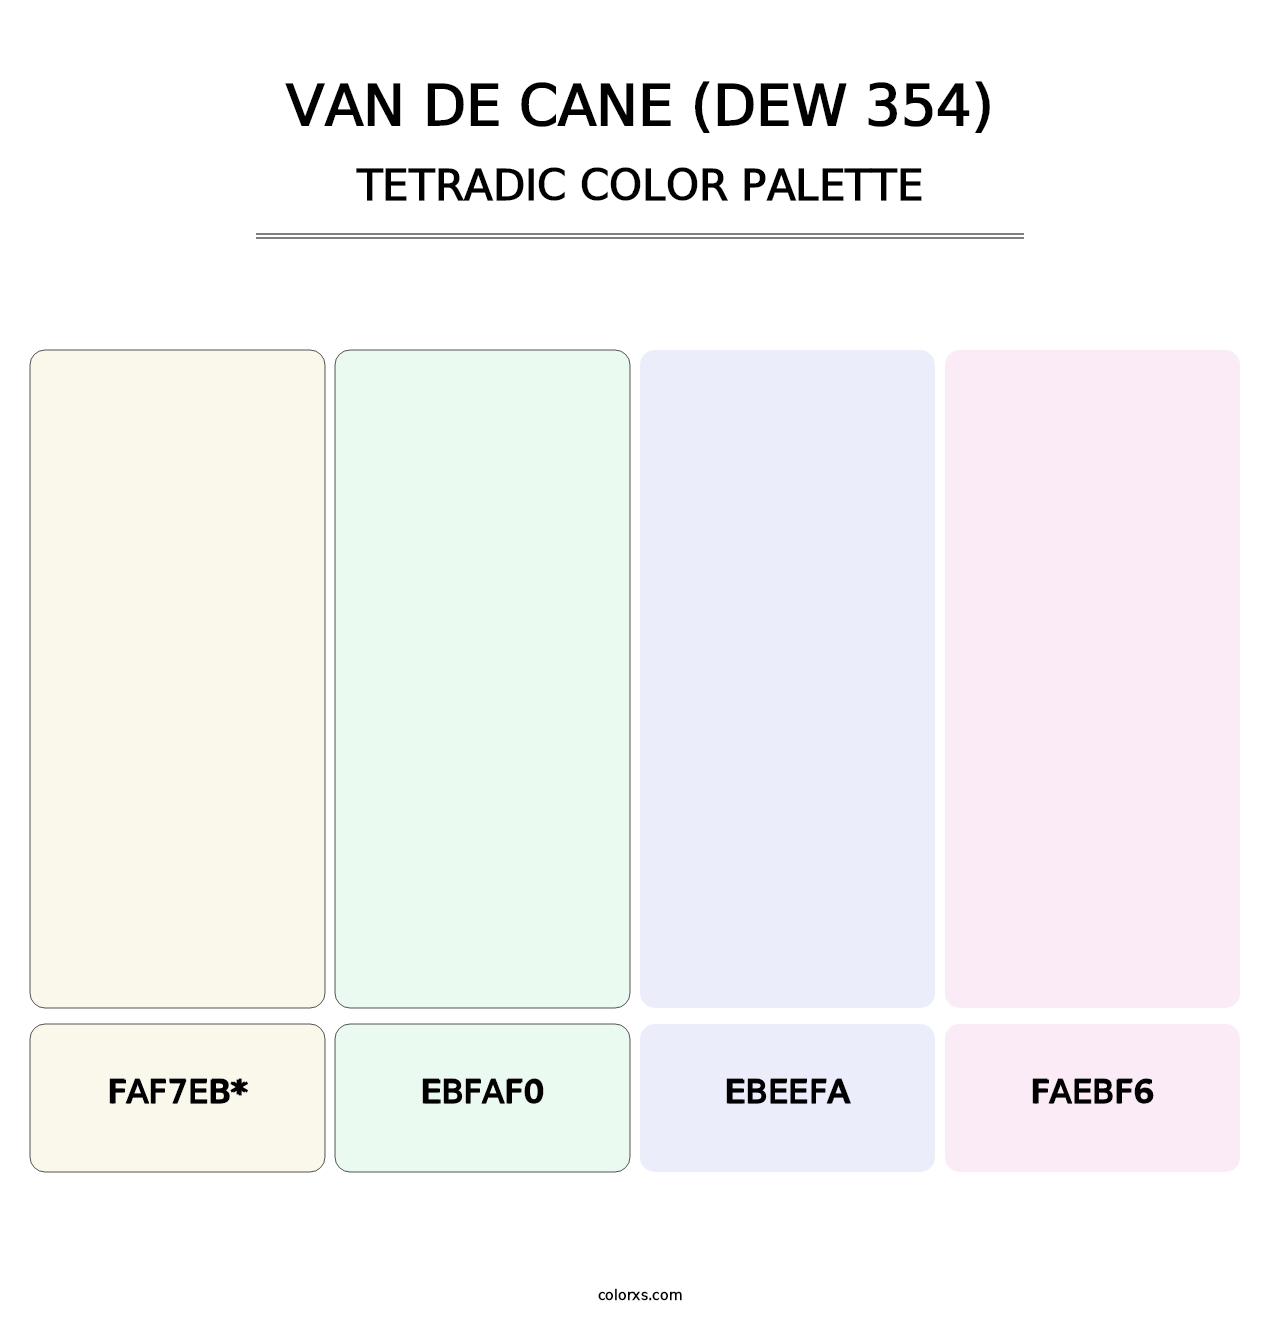 Van de Cane (DEW 354) - Tetradic Color Palette